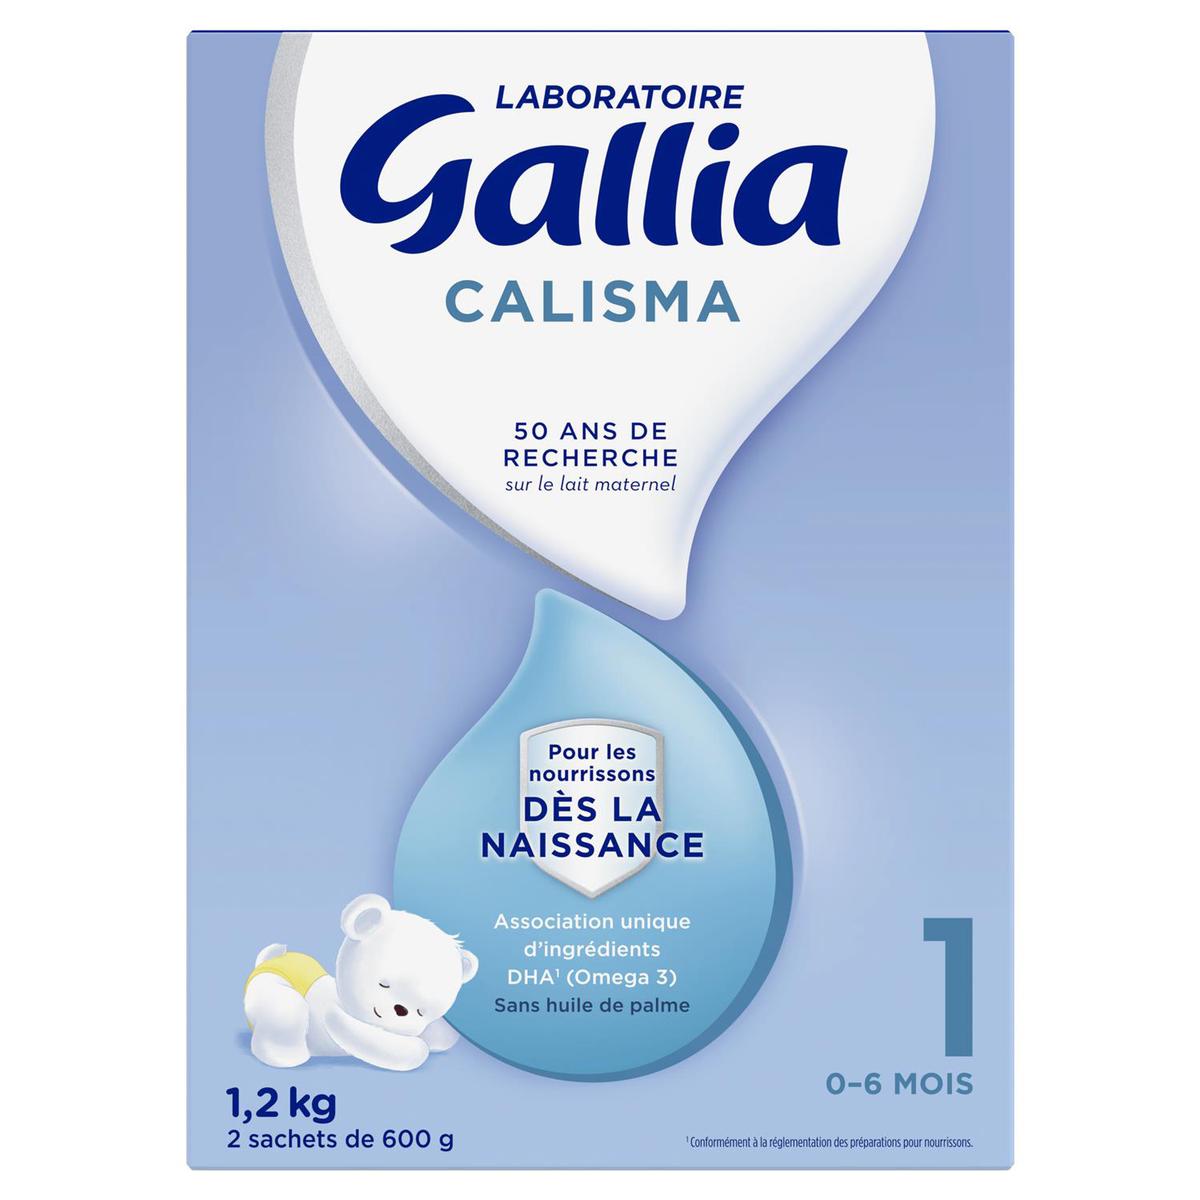 Lait Gallia Relais Allaitement - Gallia